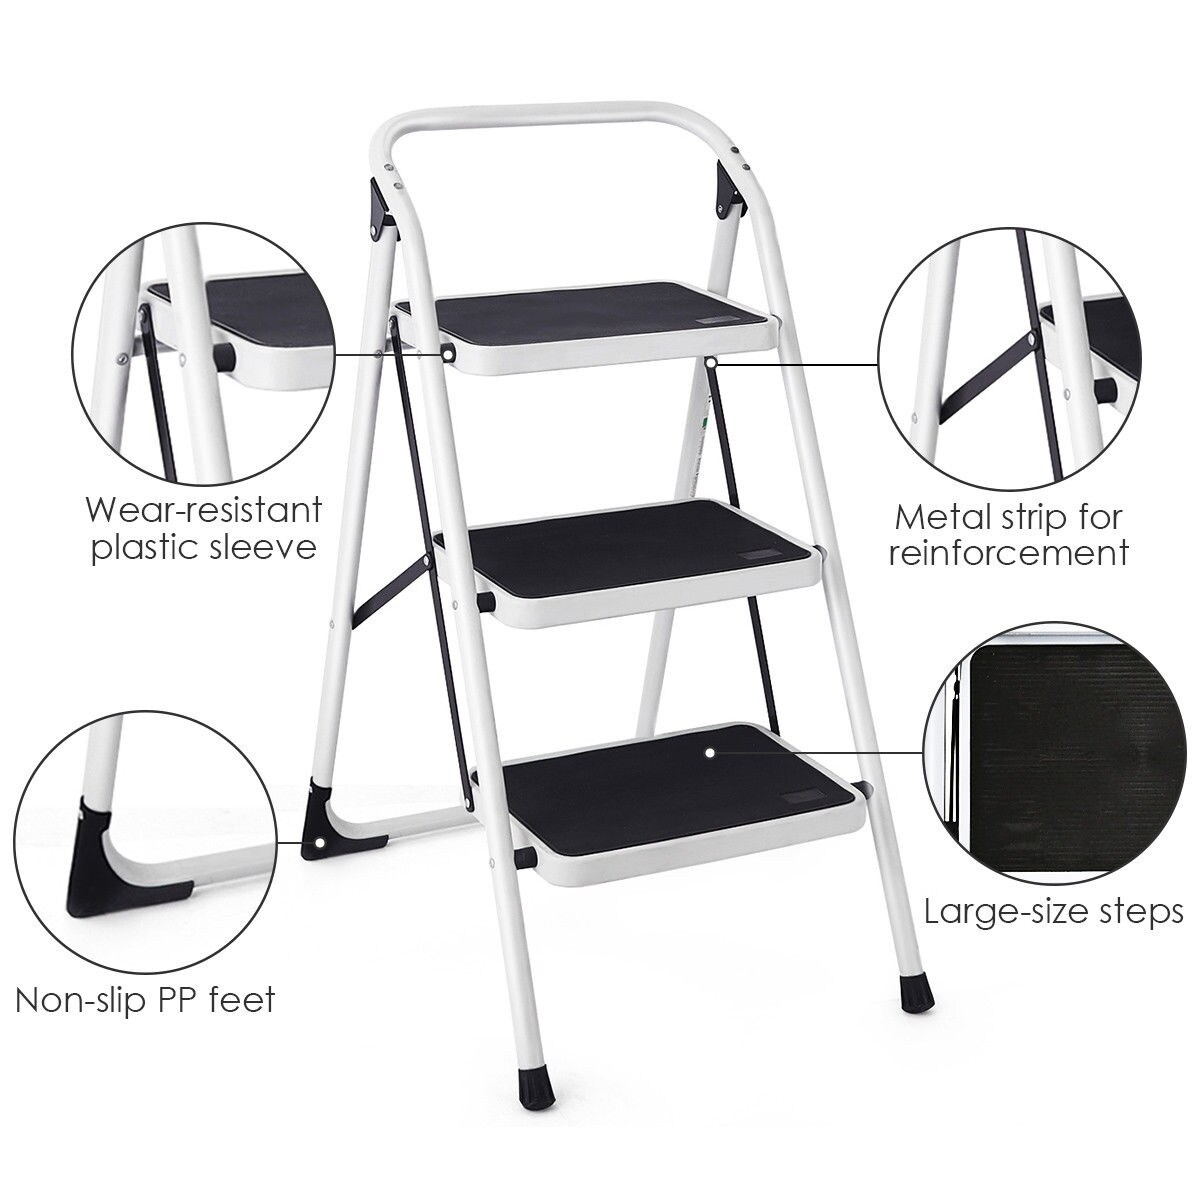 lightweight folding stool